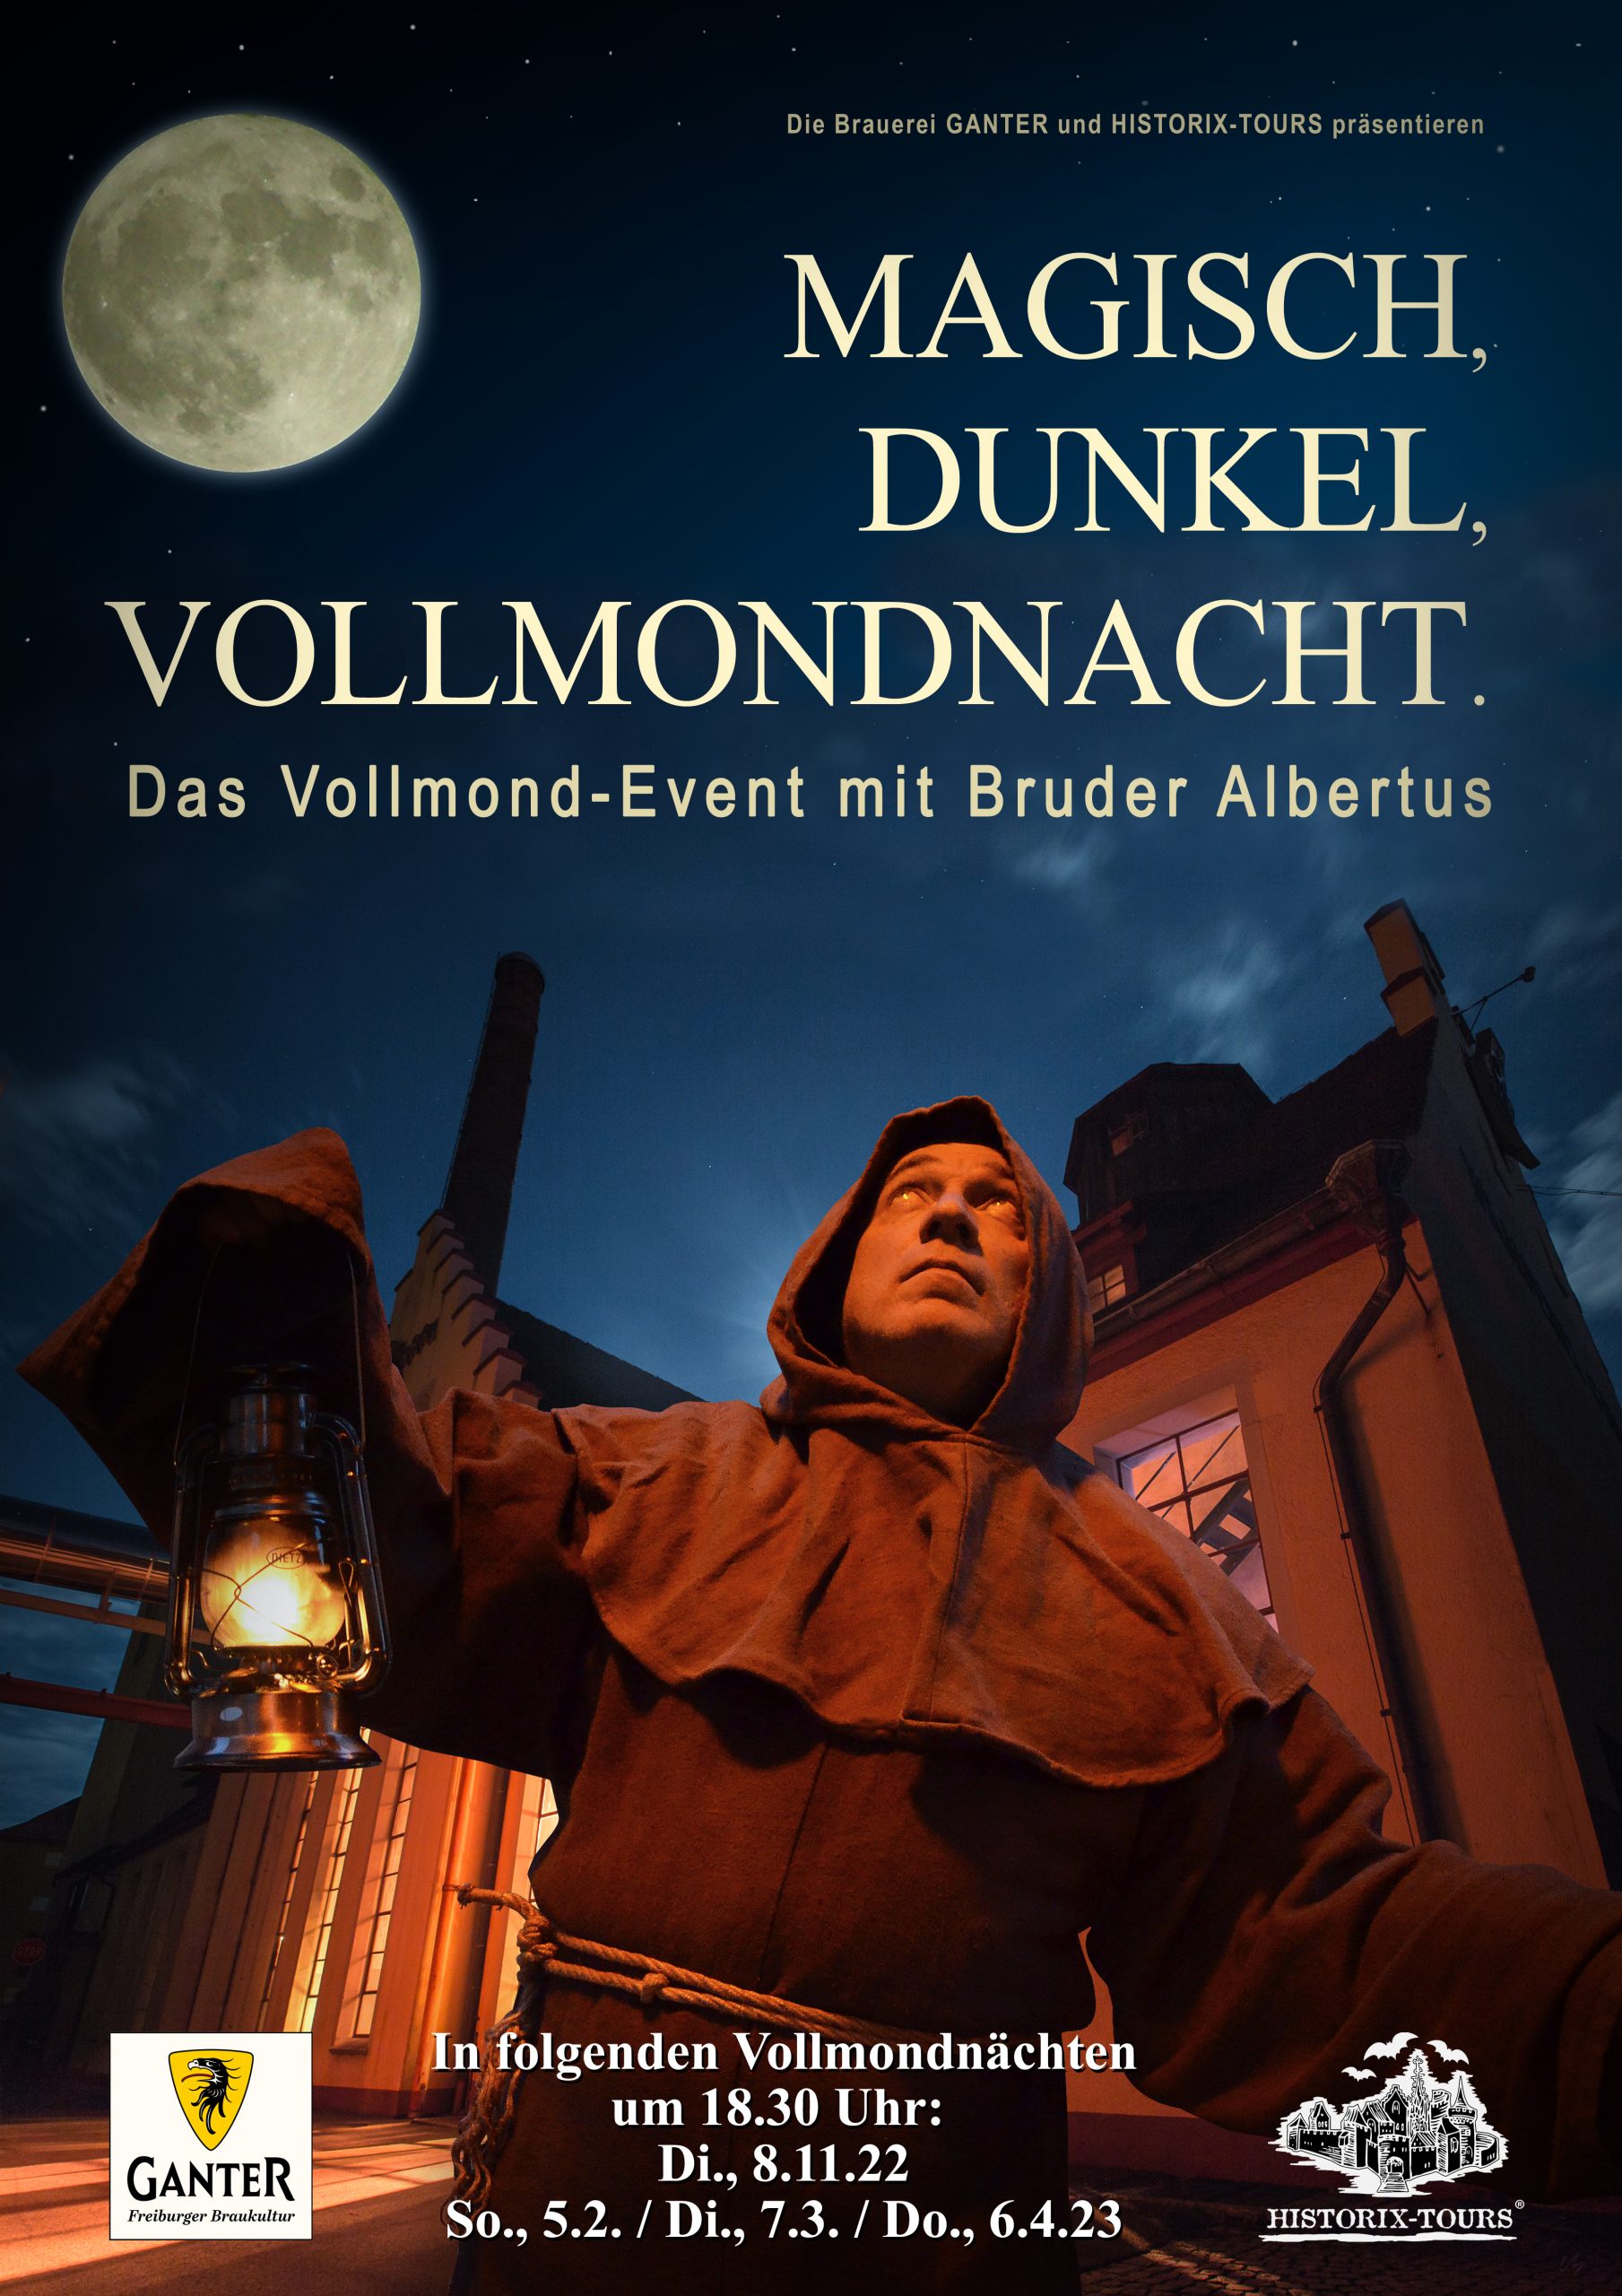 You are currently viewing Vollmond-Event: „Magisch, Dunkel, Vollmondnacht“ in Zusammenarbeit mit der Brauerei Ganter